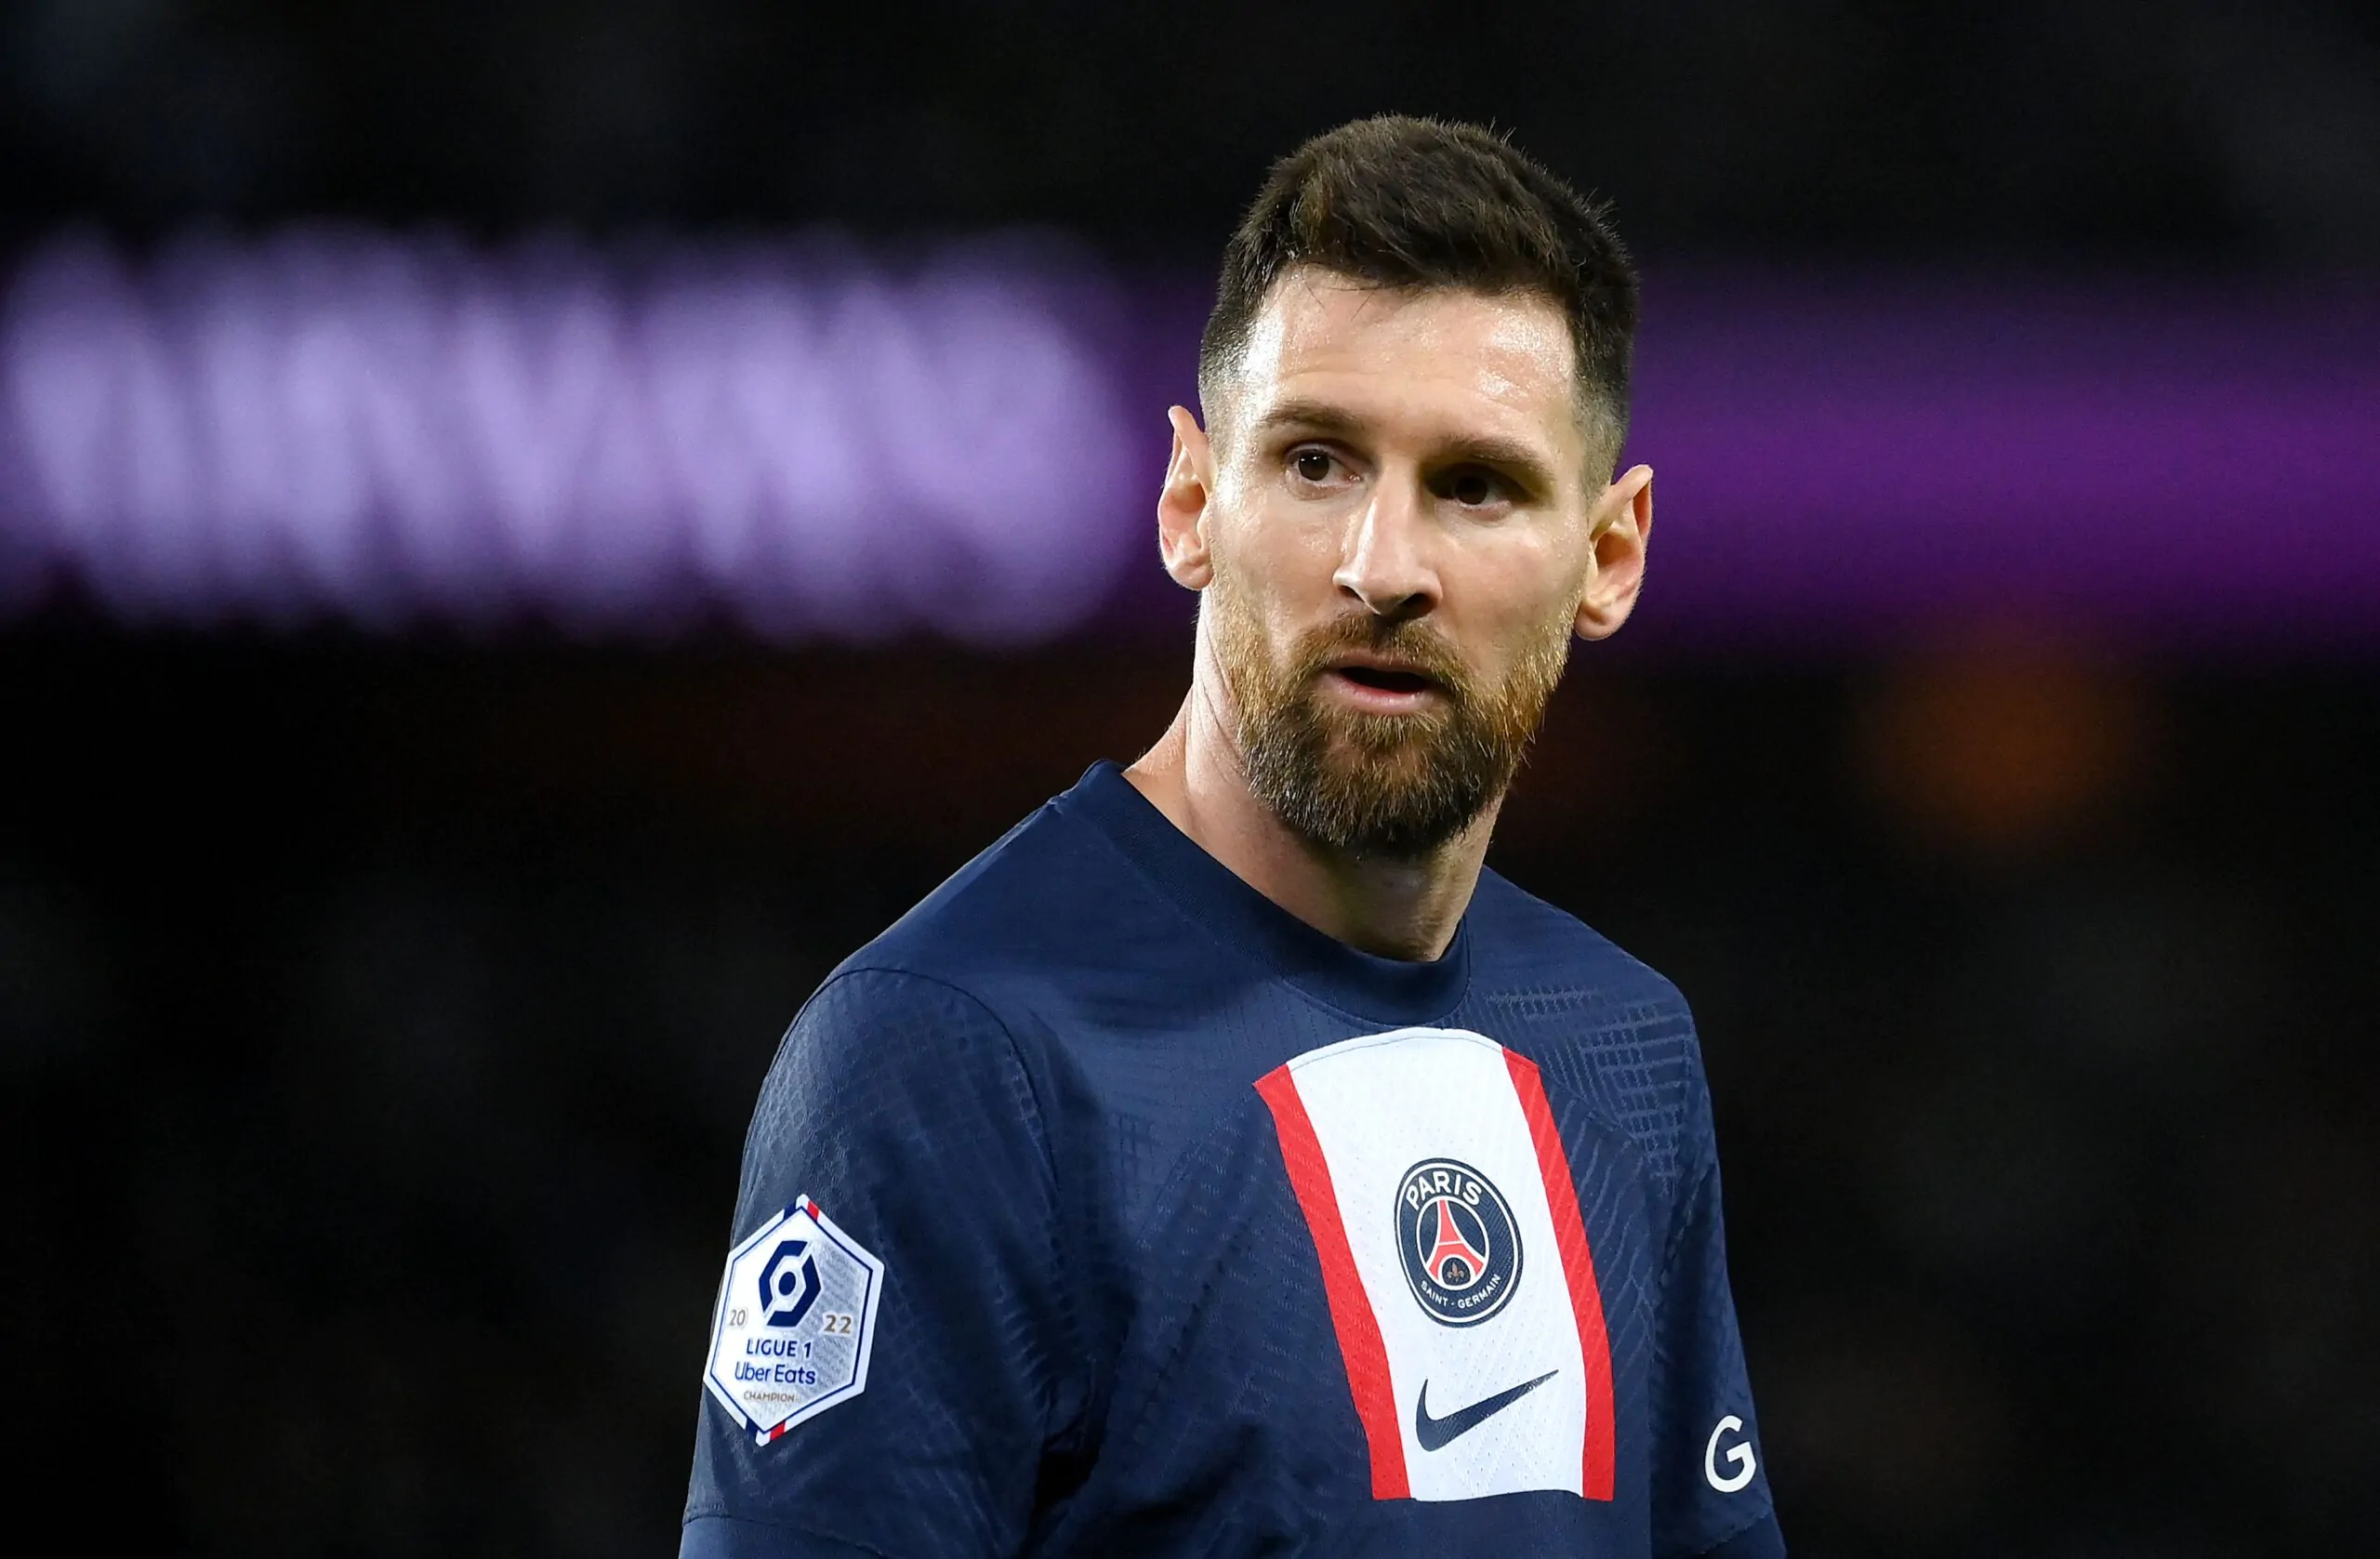 Brutta scena in Francia, la maglia di Messi usata come tappeto (FOTO)